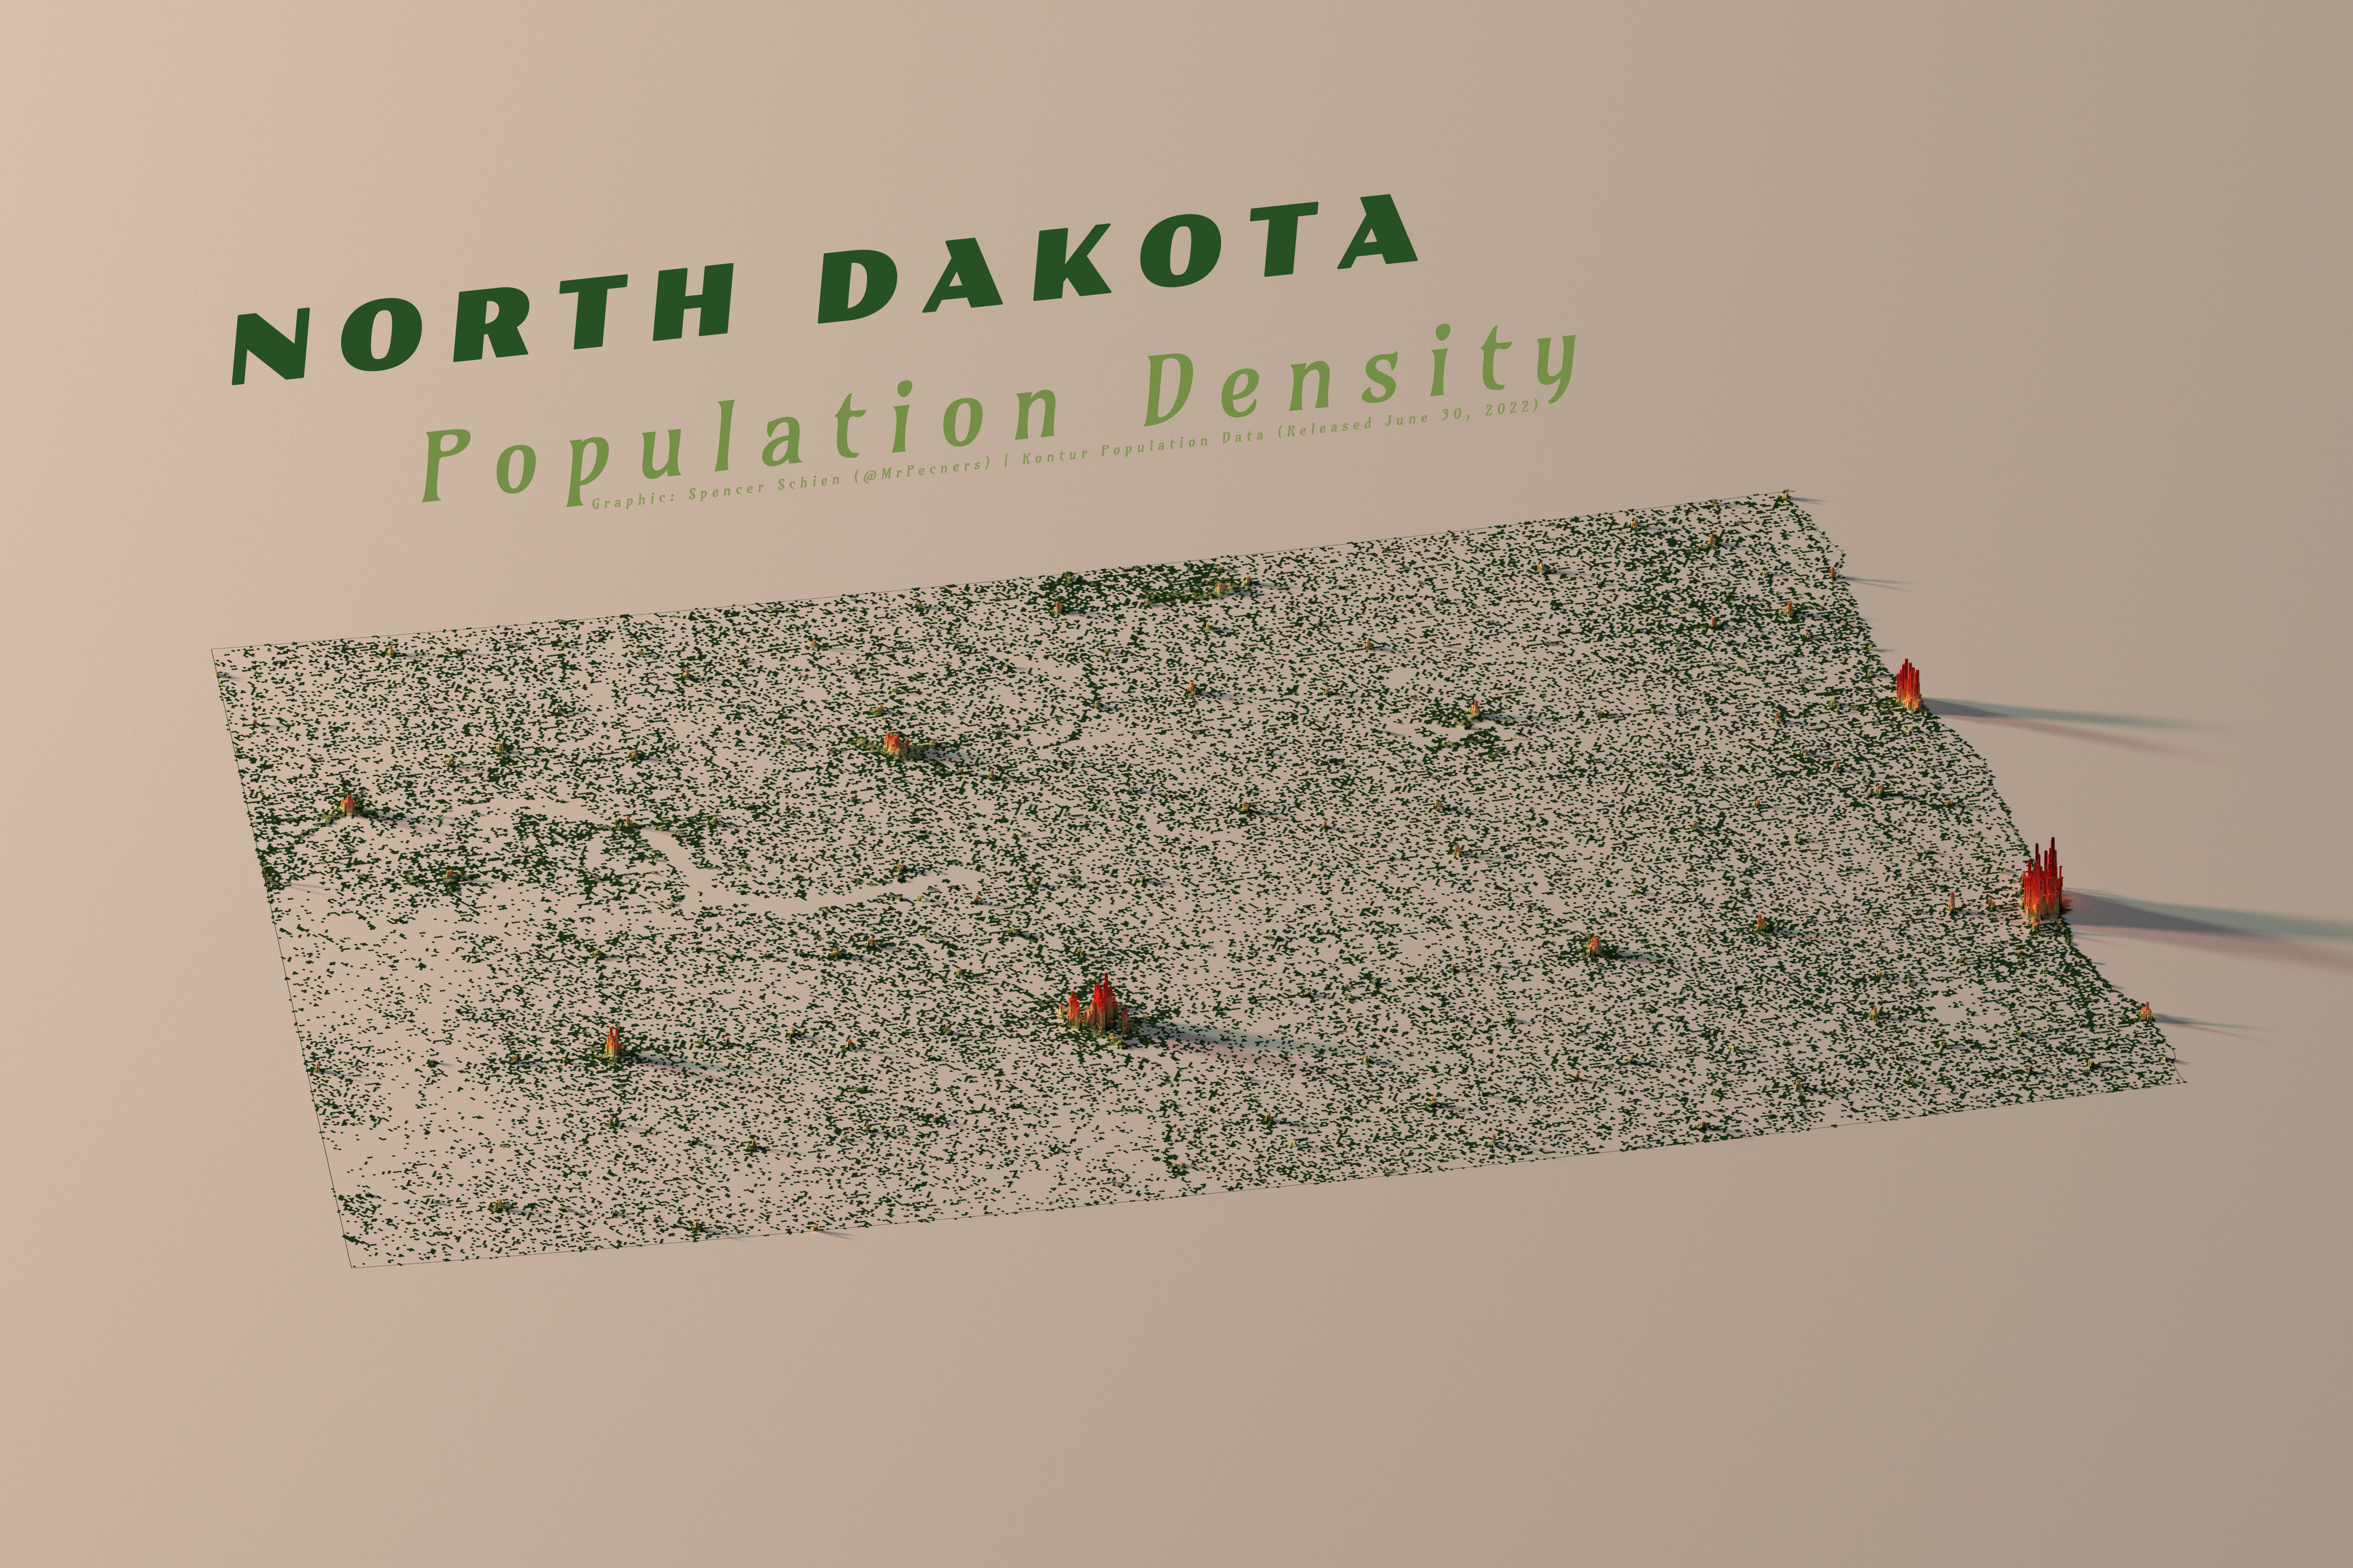 North Dakota Population Density